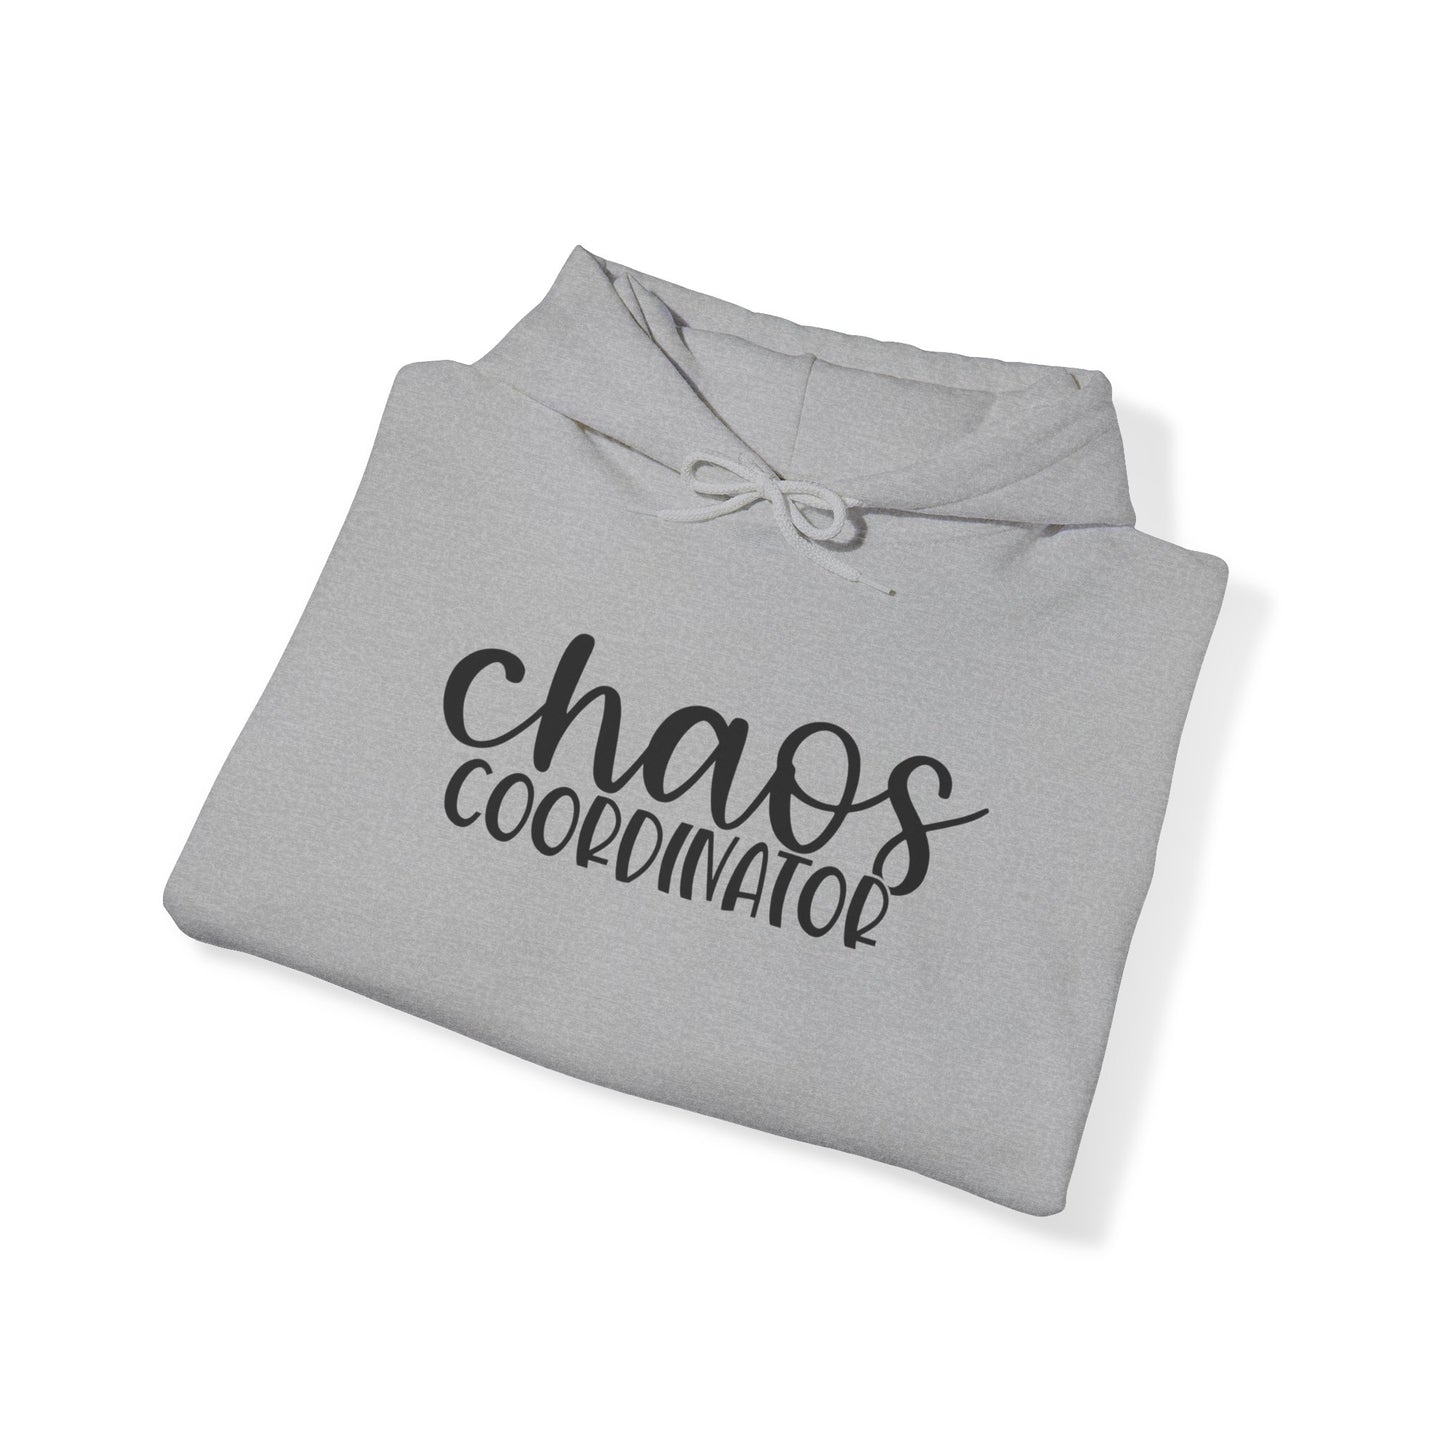 Chaos Coordinator - Hooded Sweatshirt